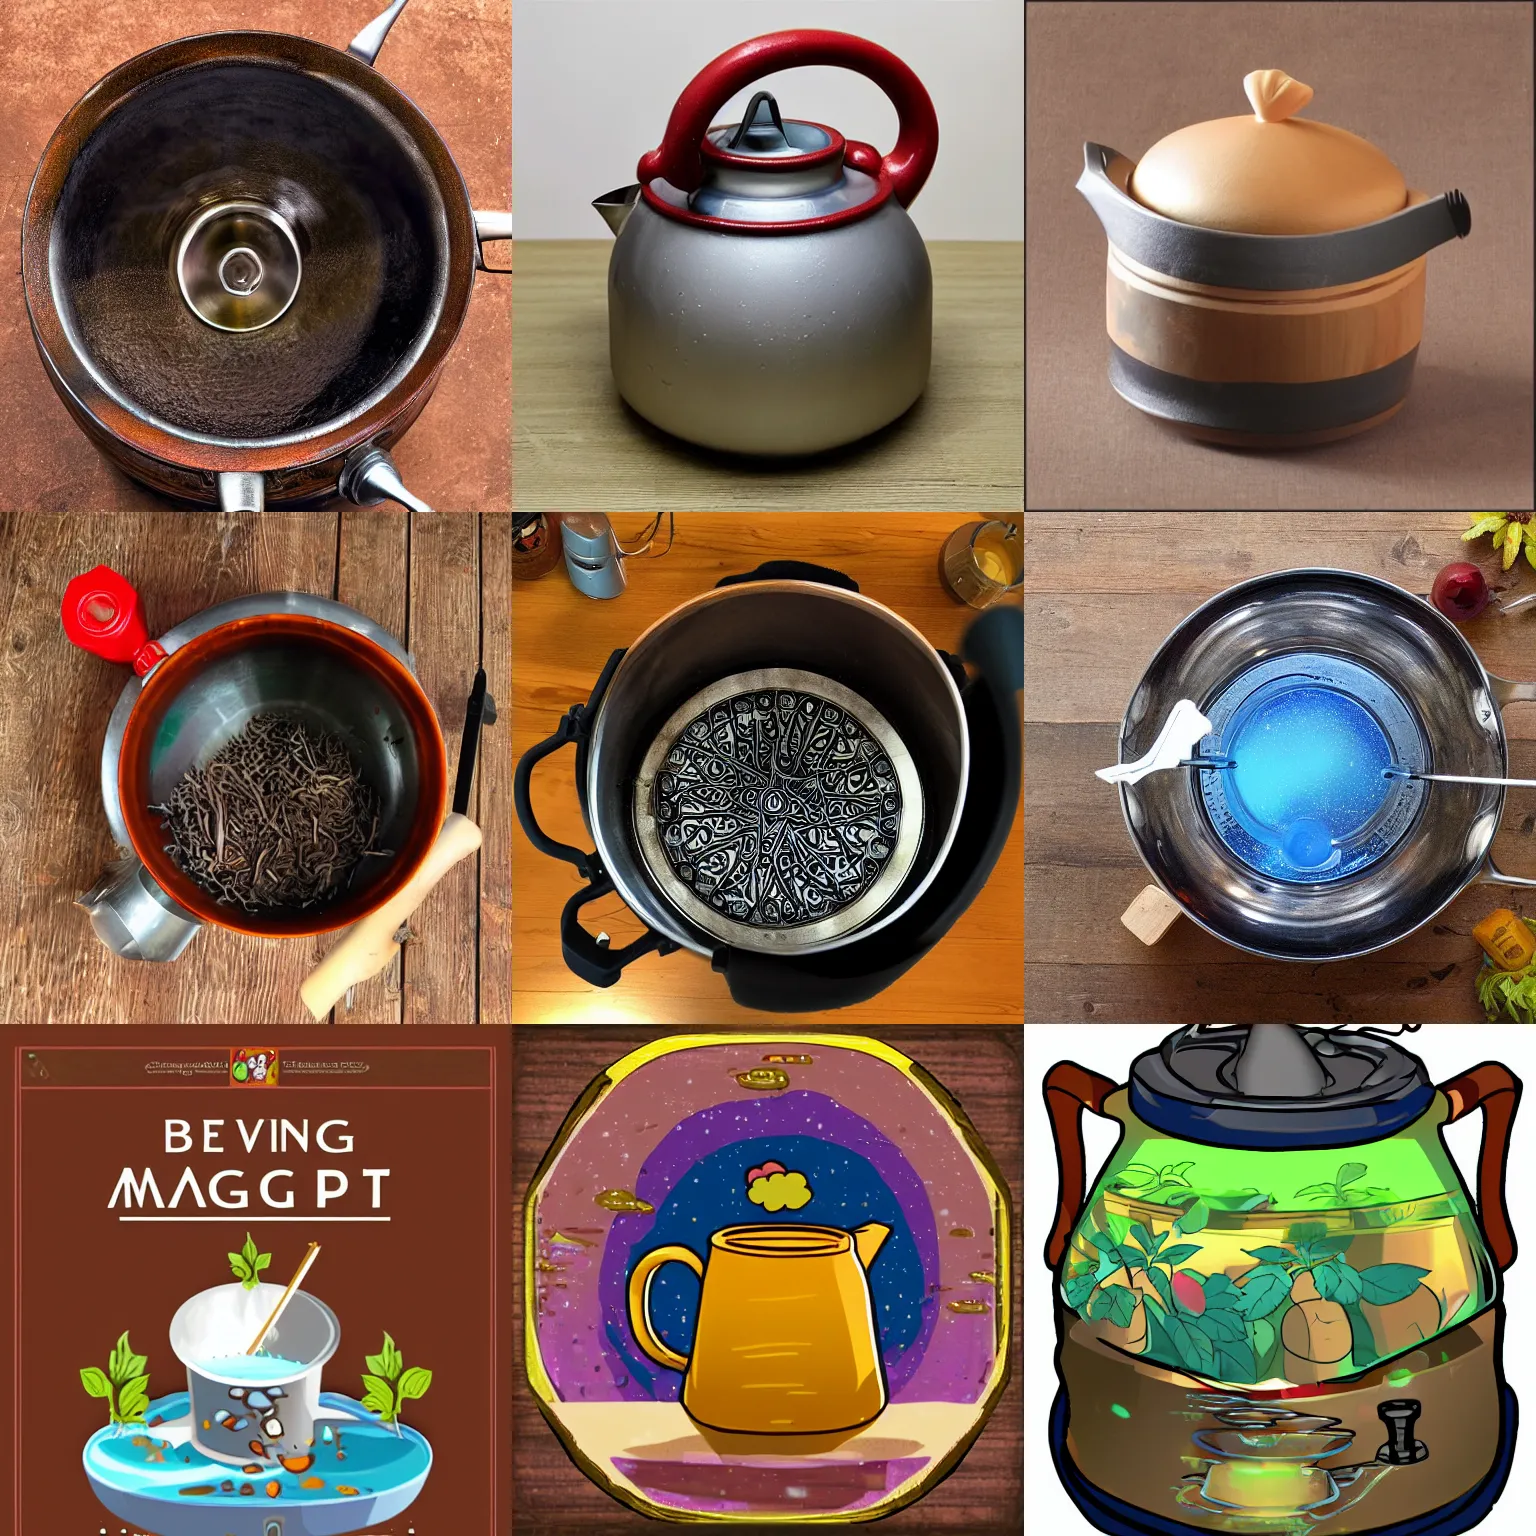 Prompt: brewing magic pot